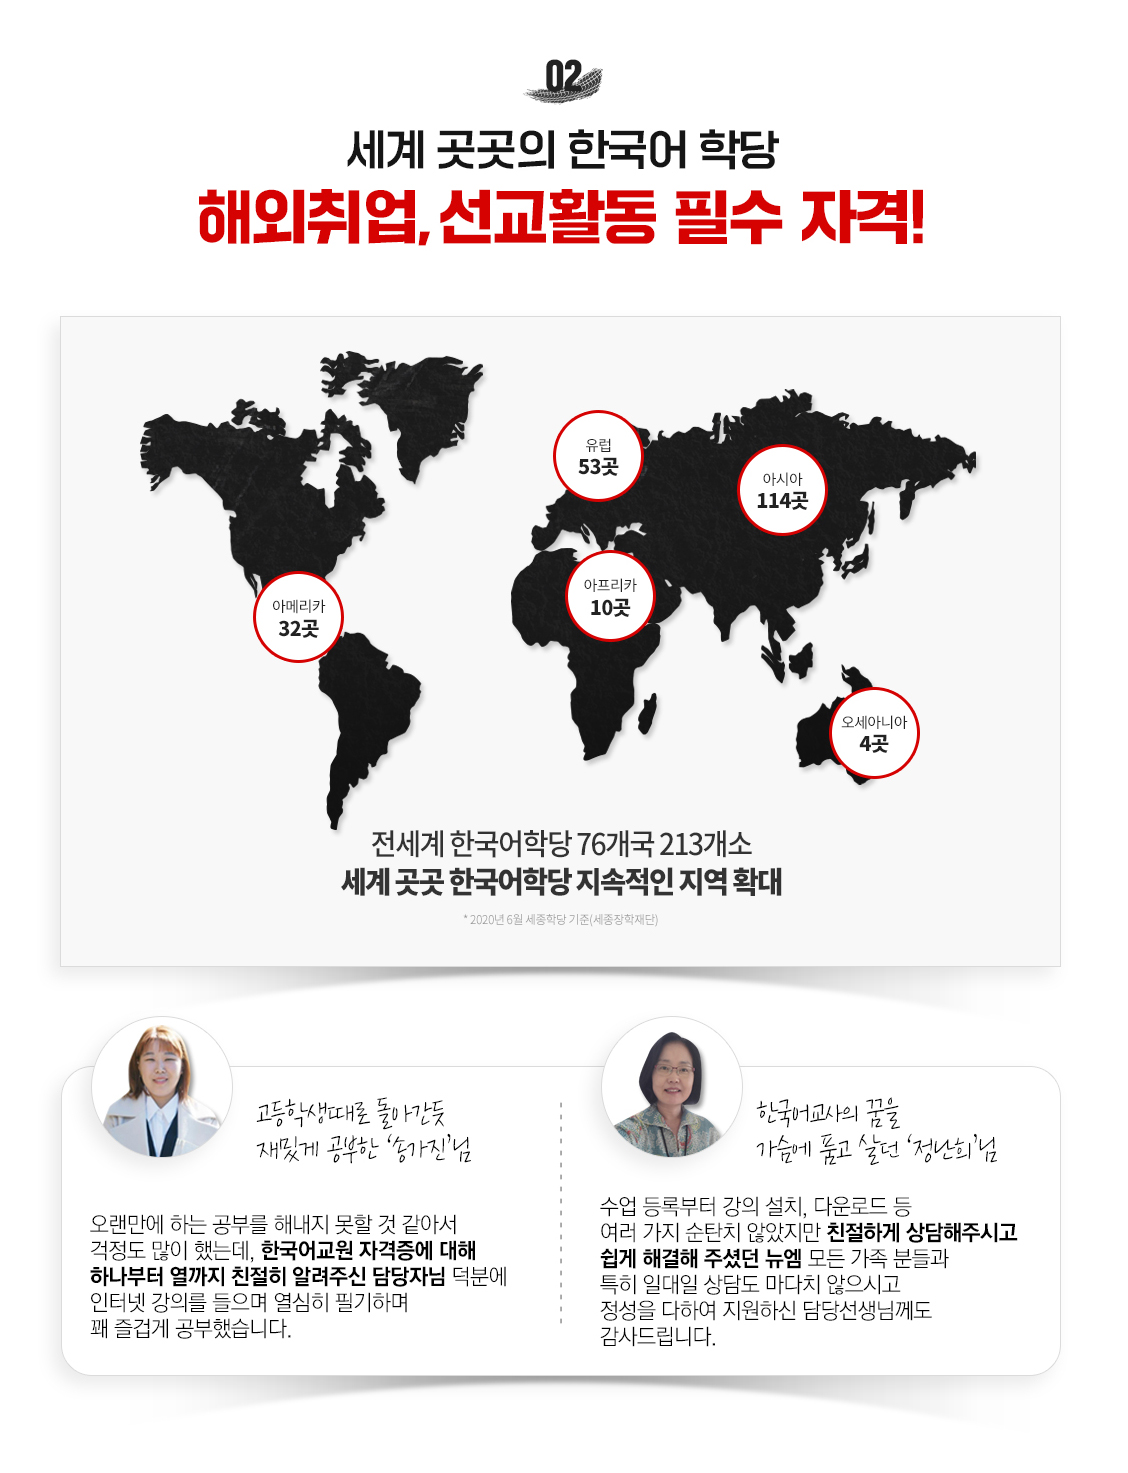 세계 곳곳의 한국어 학당!,해외 취업, 선교활동 필수 자격!